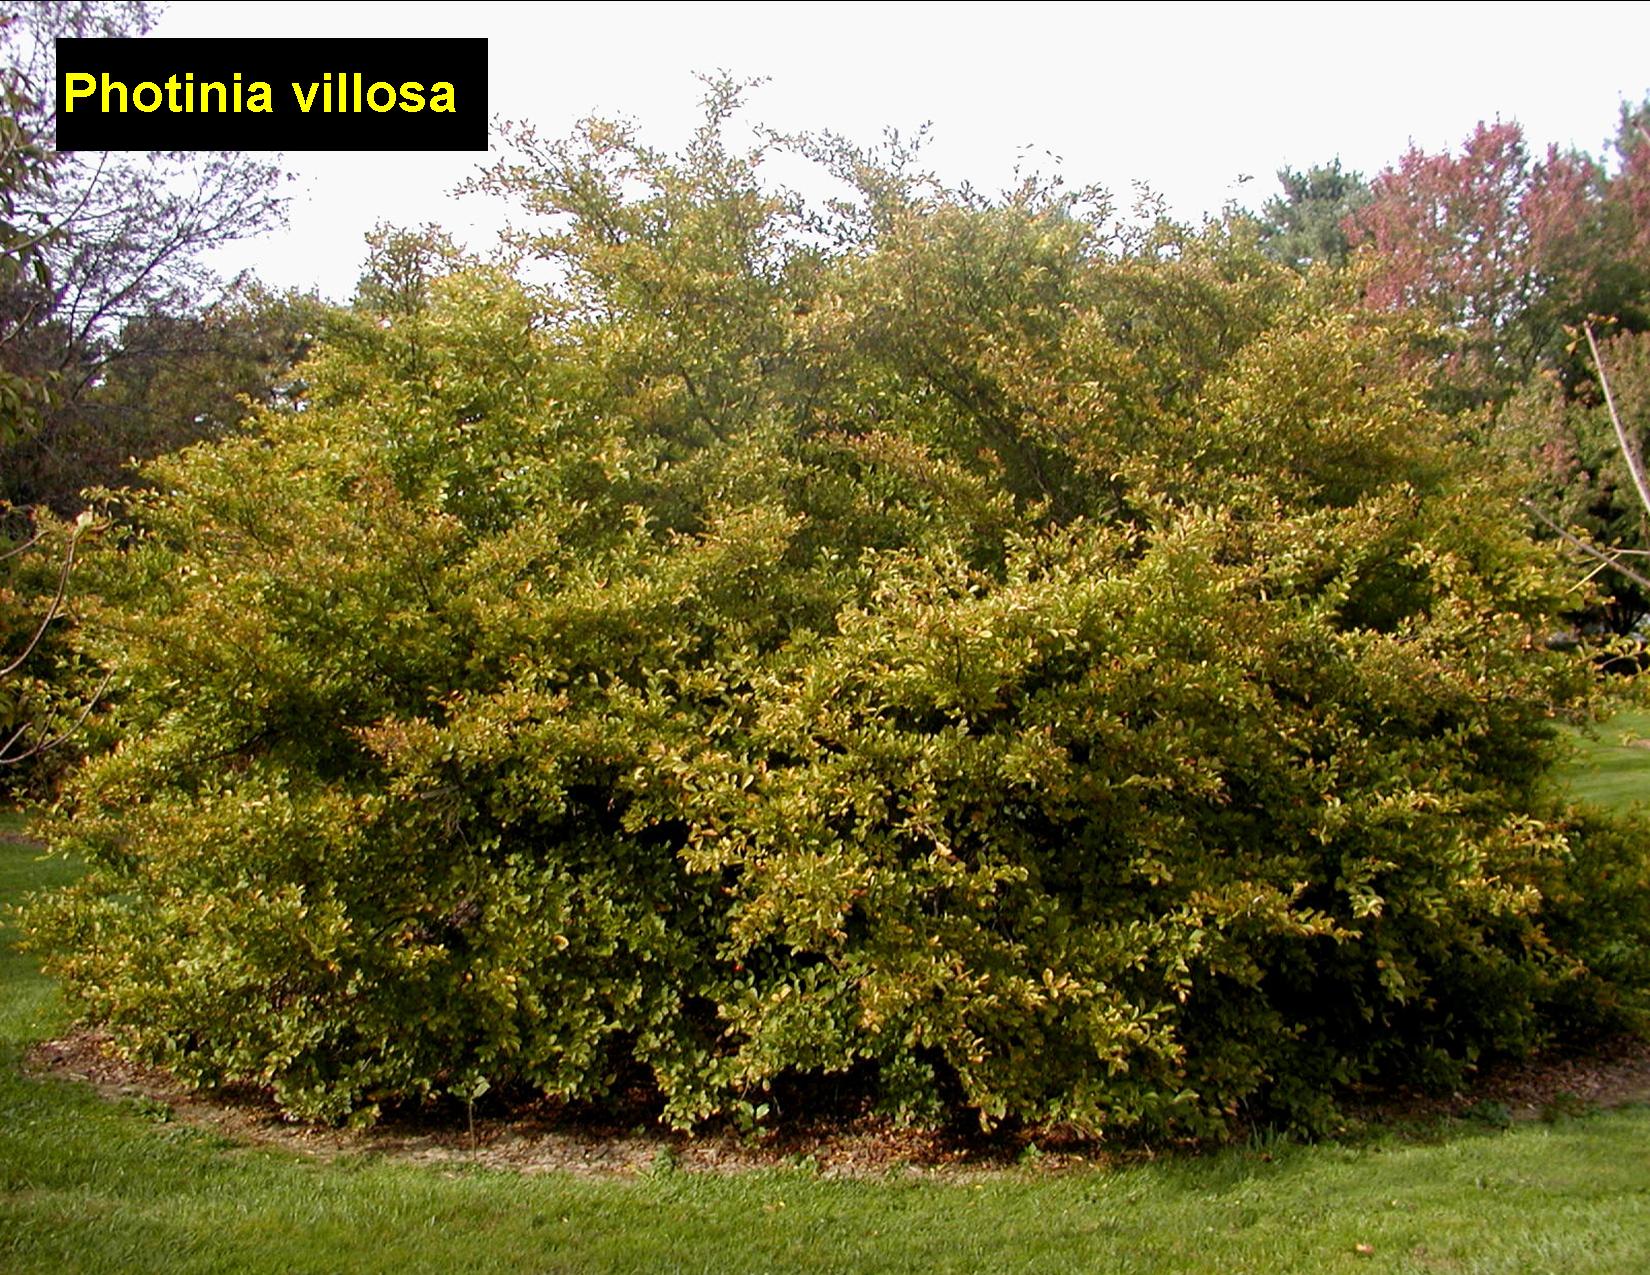 PHOTINIA villosa - Oriental Photinia